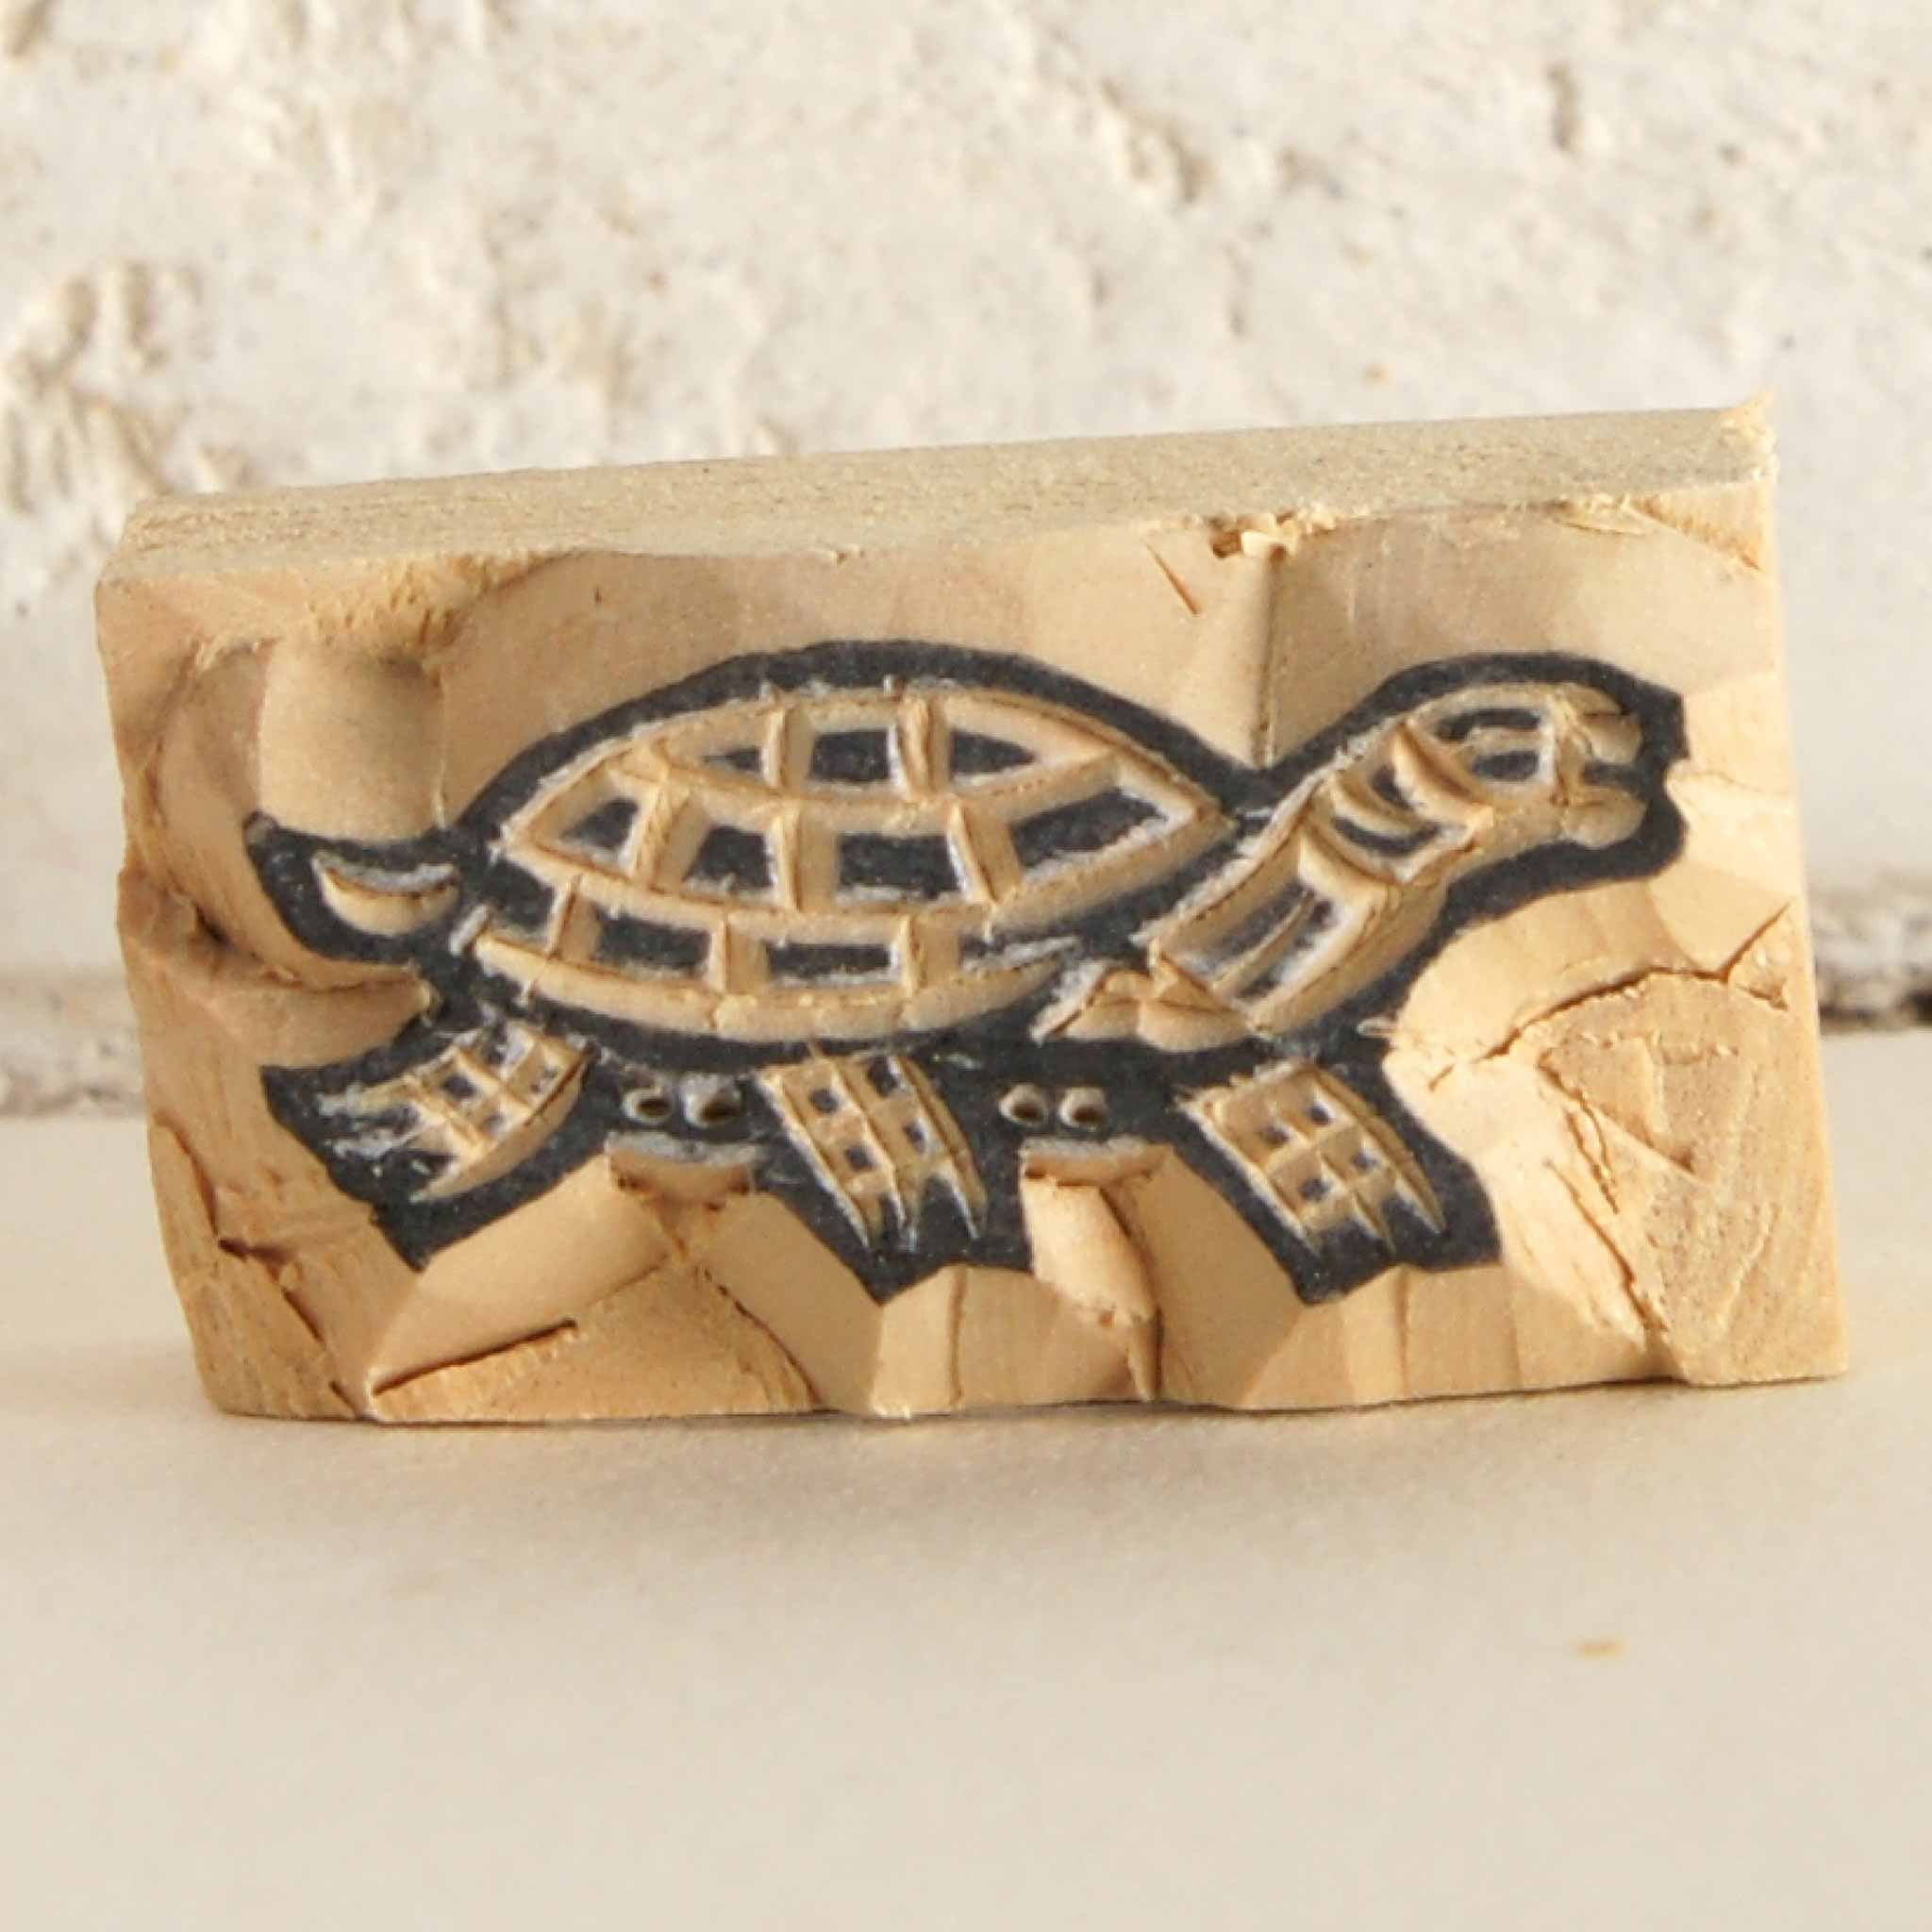 Stempel Schildkröte von Tudi Billo